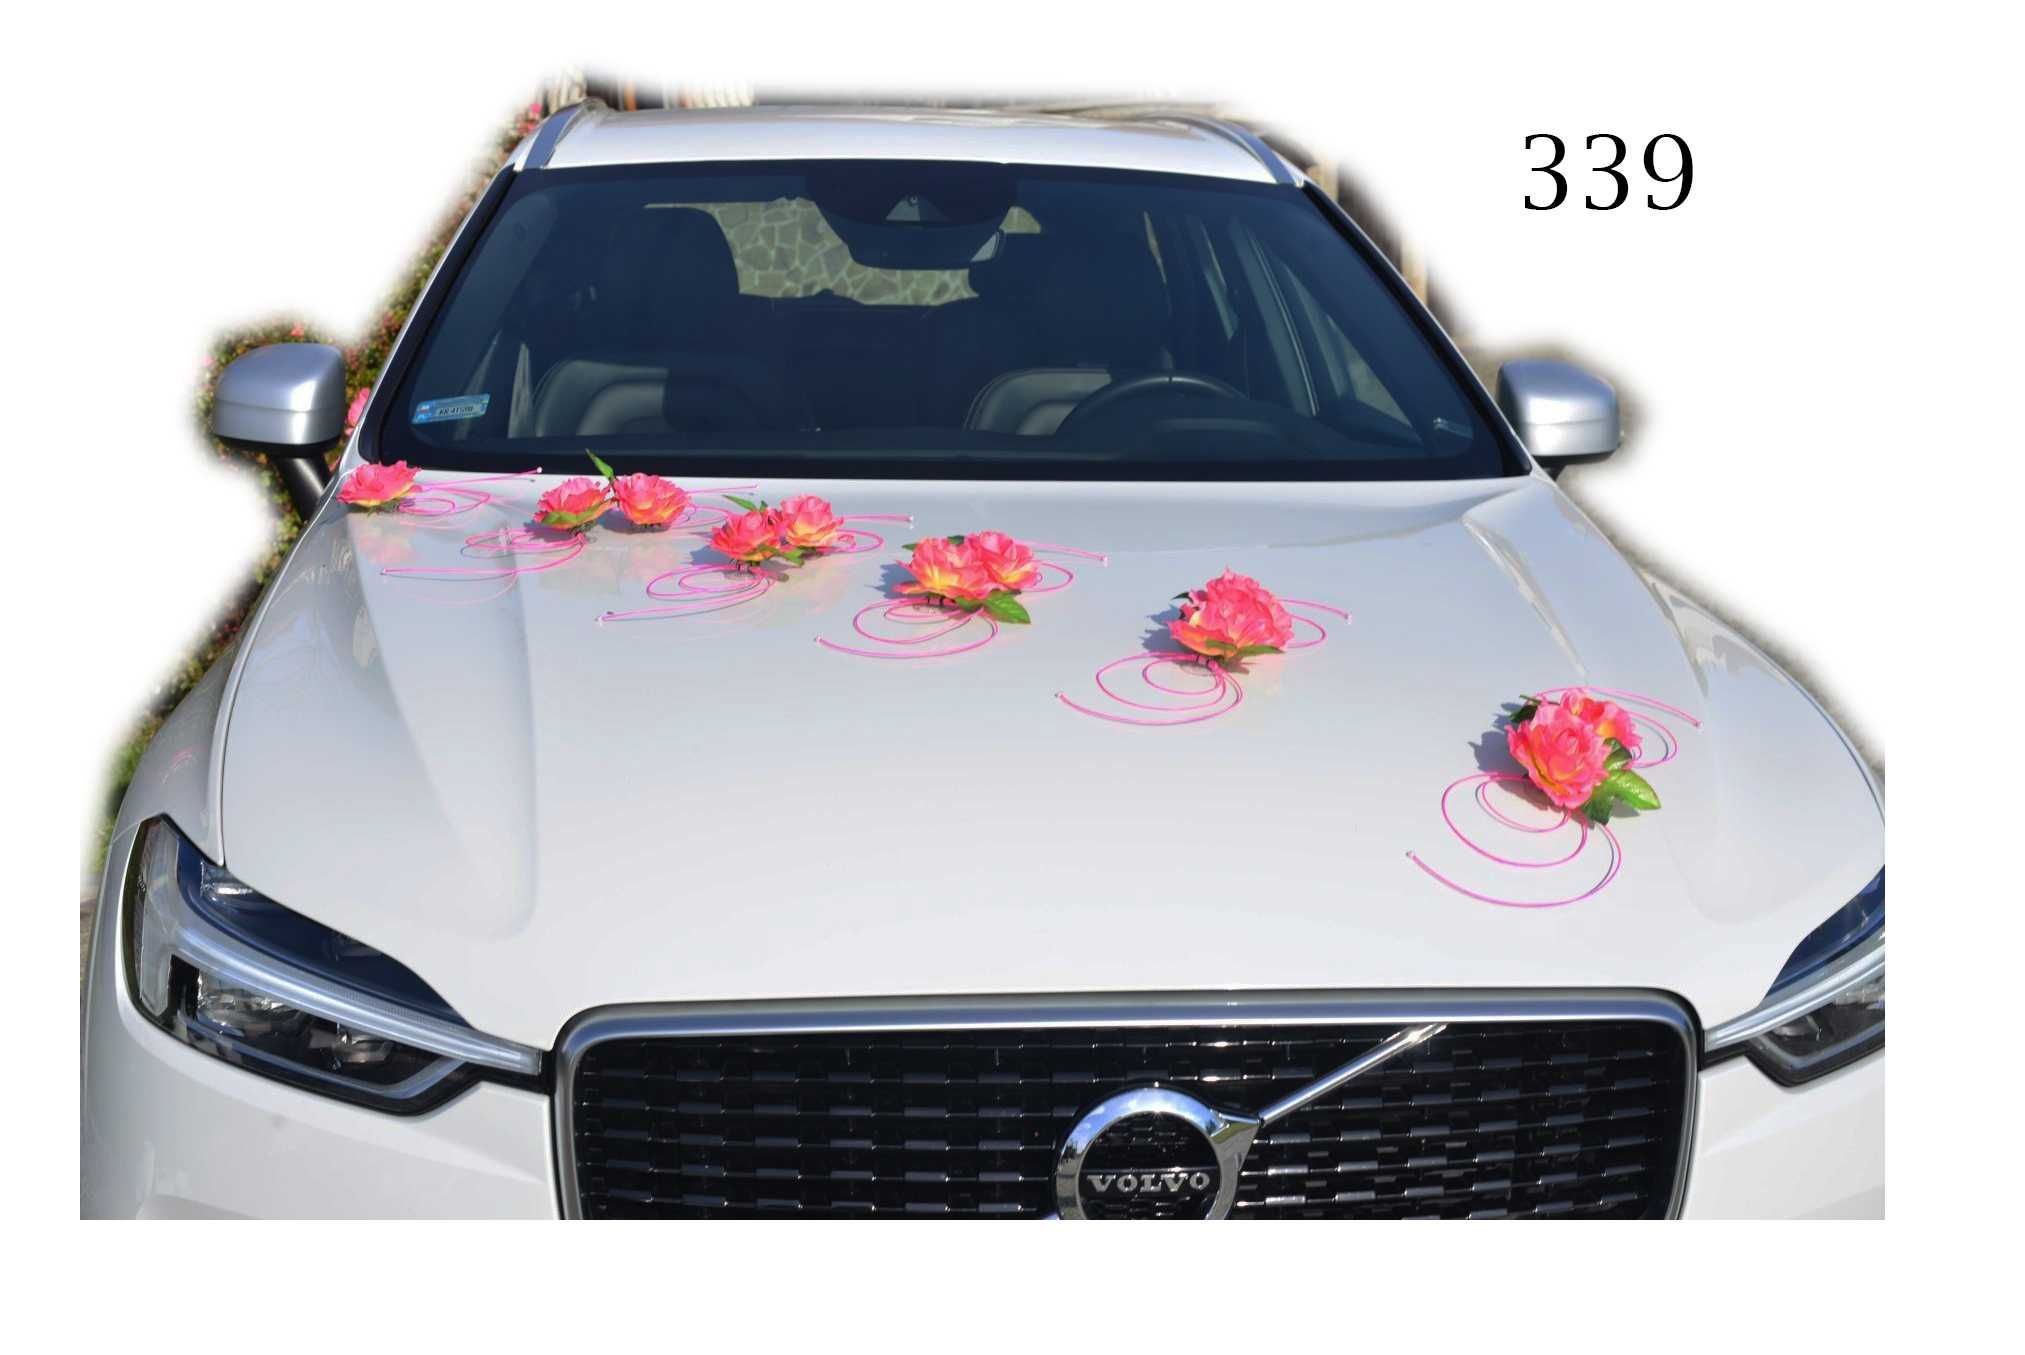 ZESTAW dekoracja na samochód do ślubu ŁATWY MONTAŻ dekoracje 339